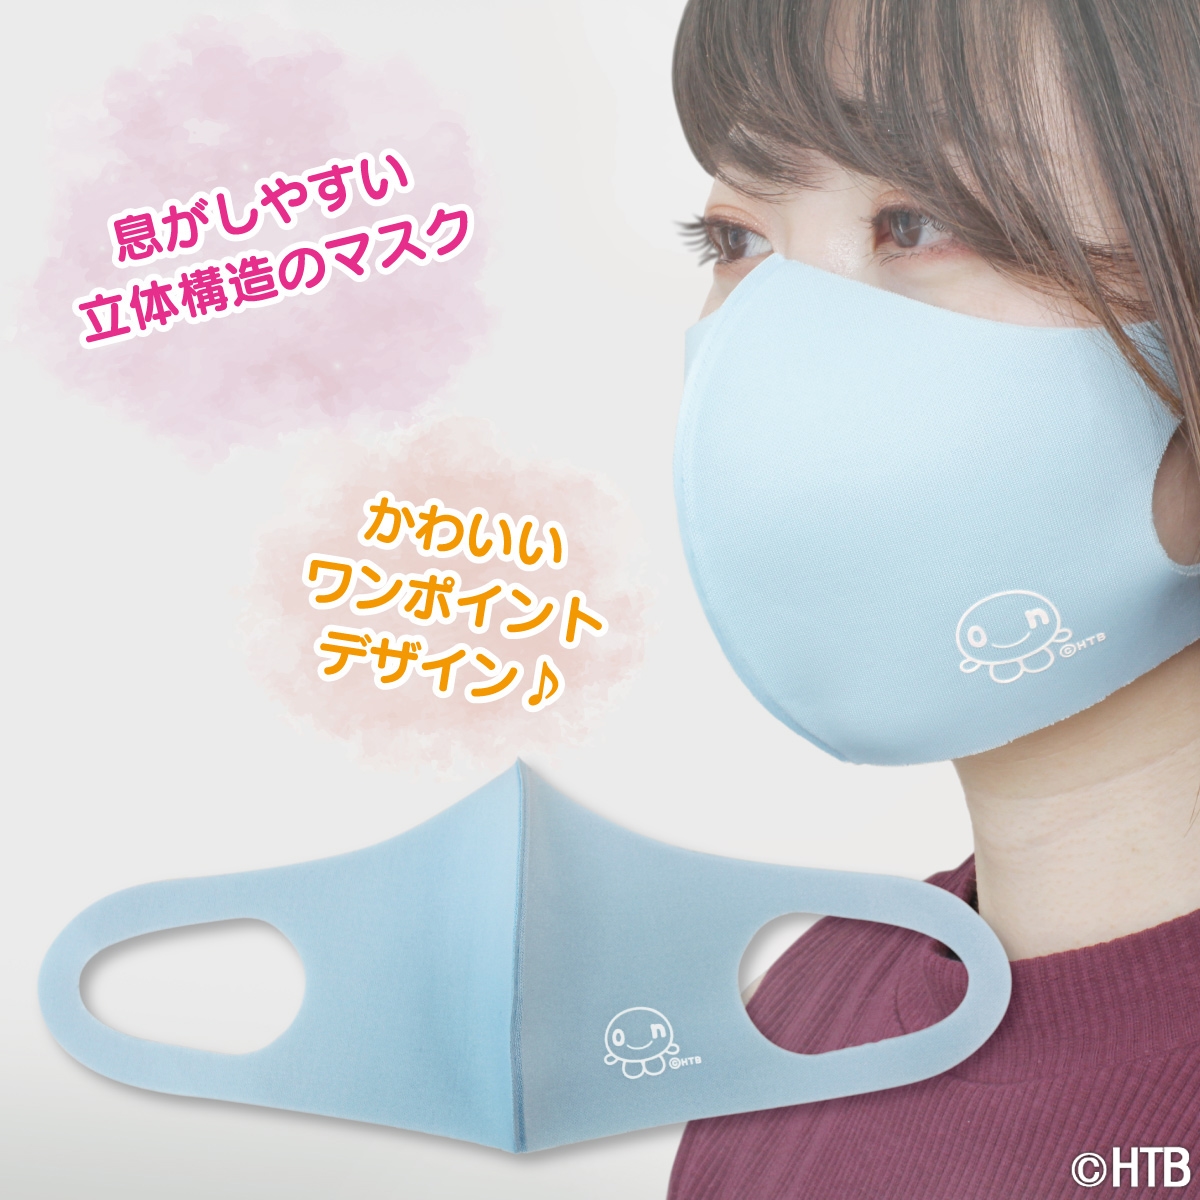 「onちゃん」エチケット用マスク